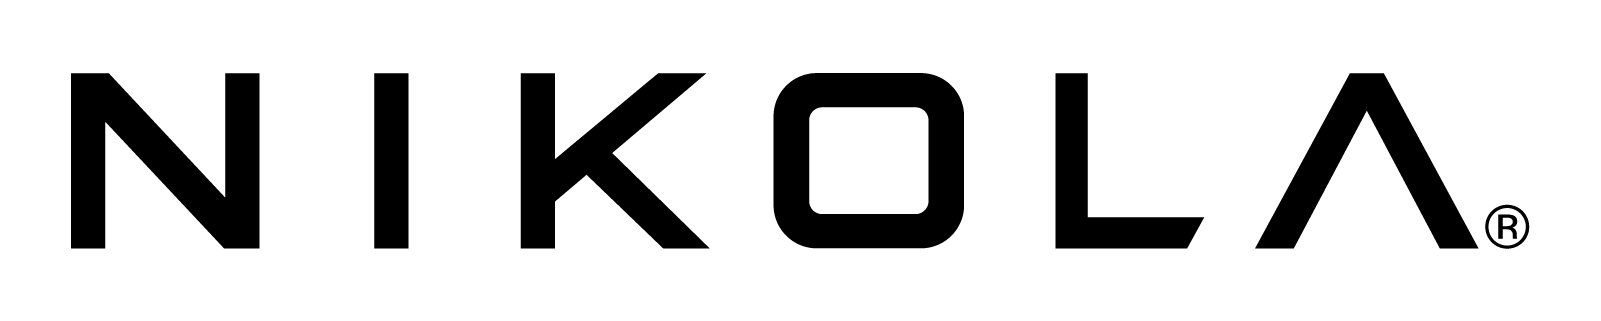 Nikola Company Logo